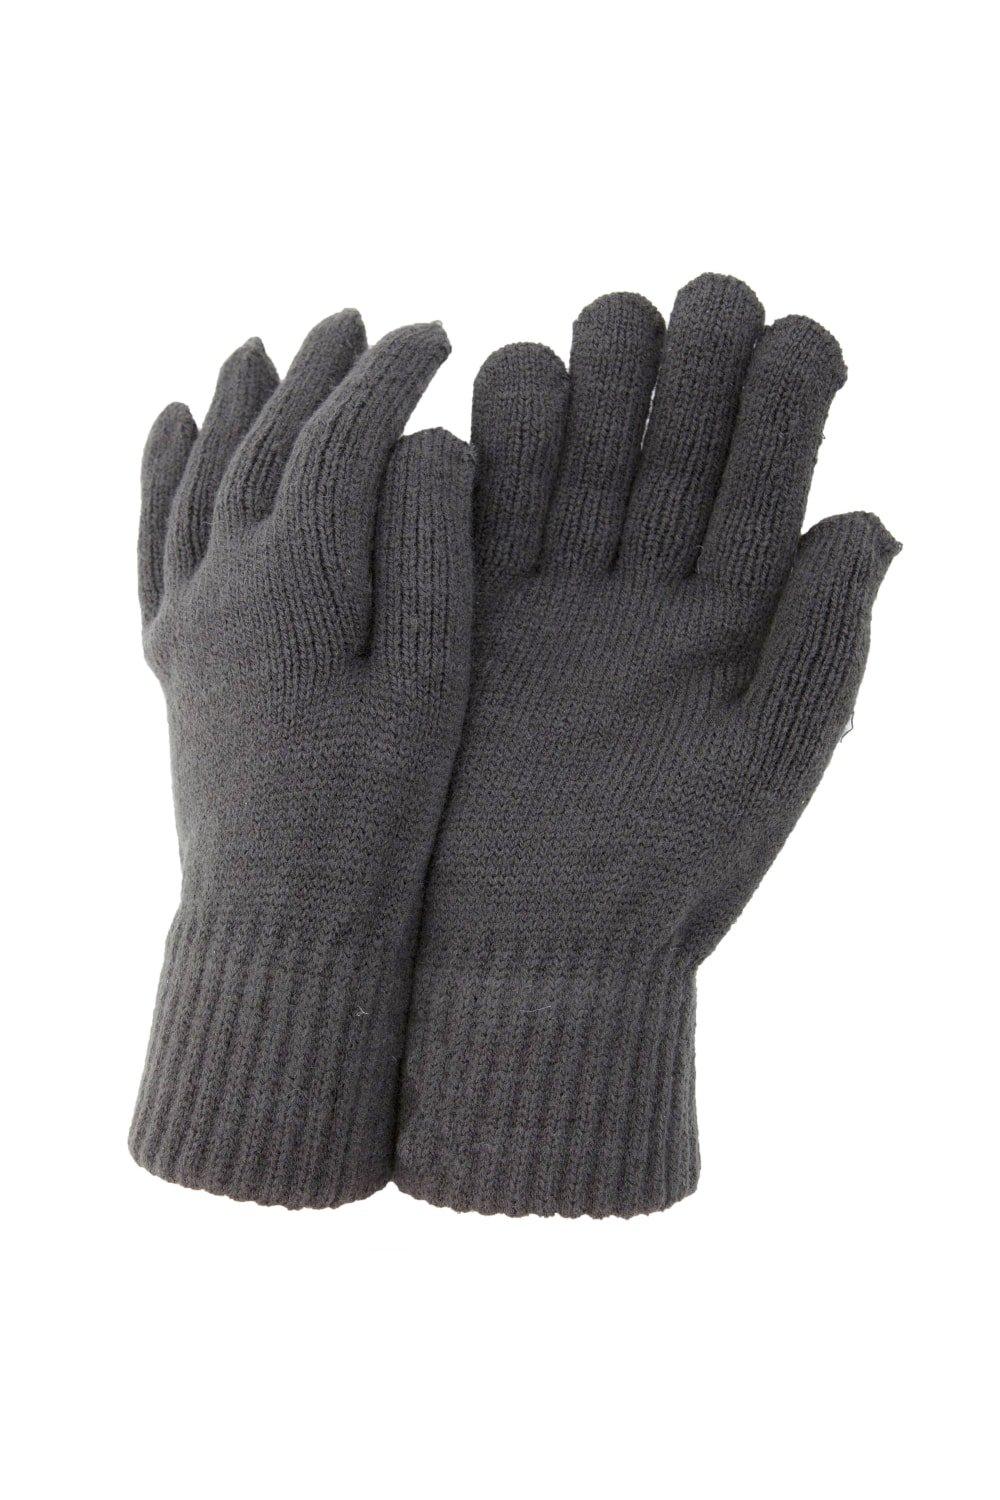 РАСПРОДАЖА - Термовязаные зимние перчатки Universal Textiles, серый